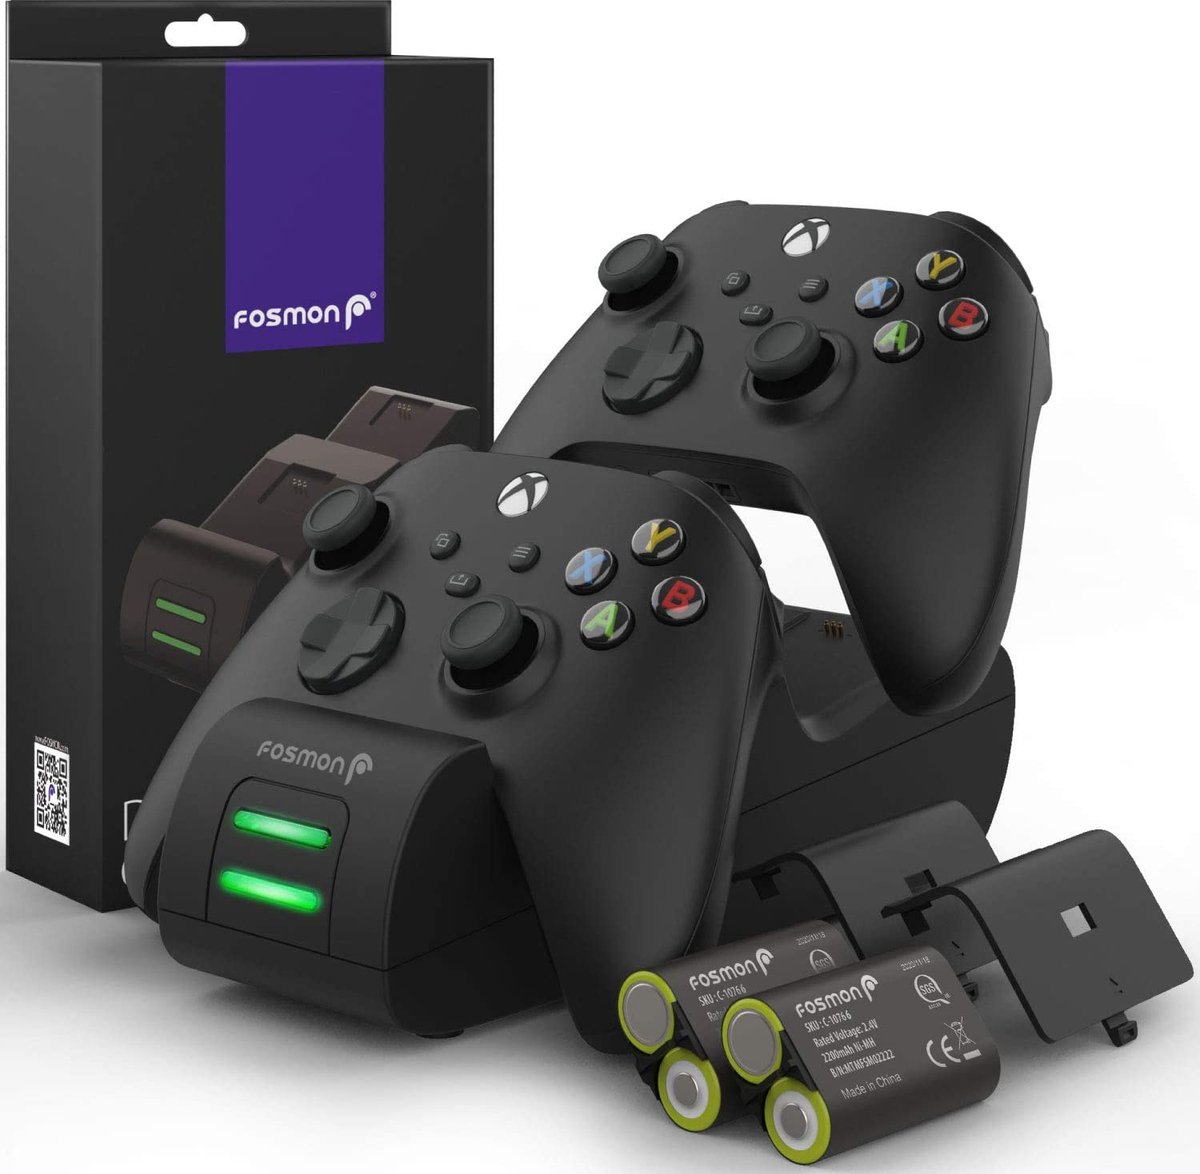 Fosmon Dual 2 Max laadstation compatibel met Xbox Series X/S (2020), One/X/S Elite controllers, Dual Docking Station + 2 x 2200mAh batterij - zwart